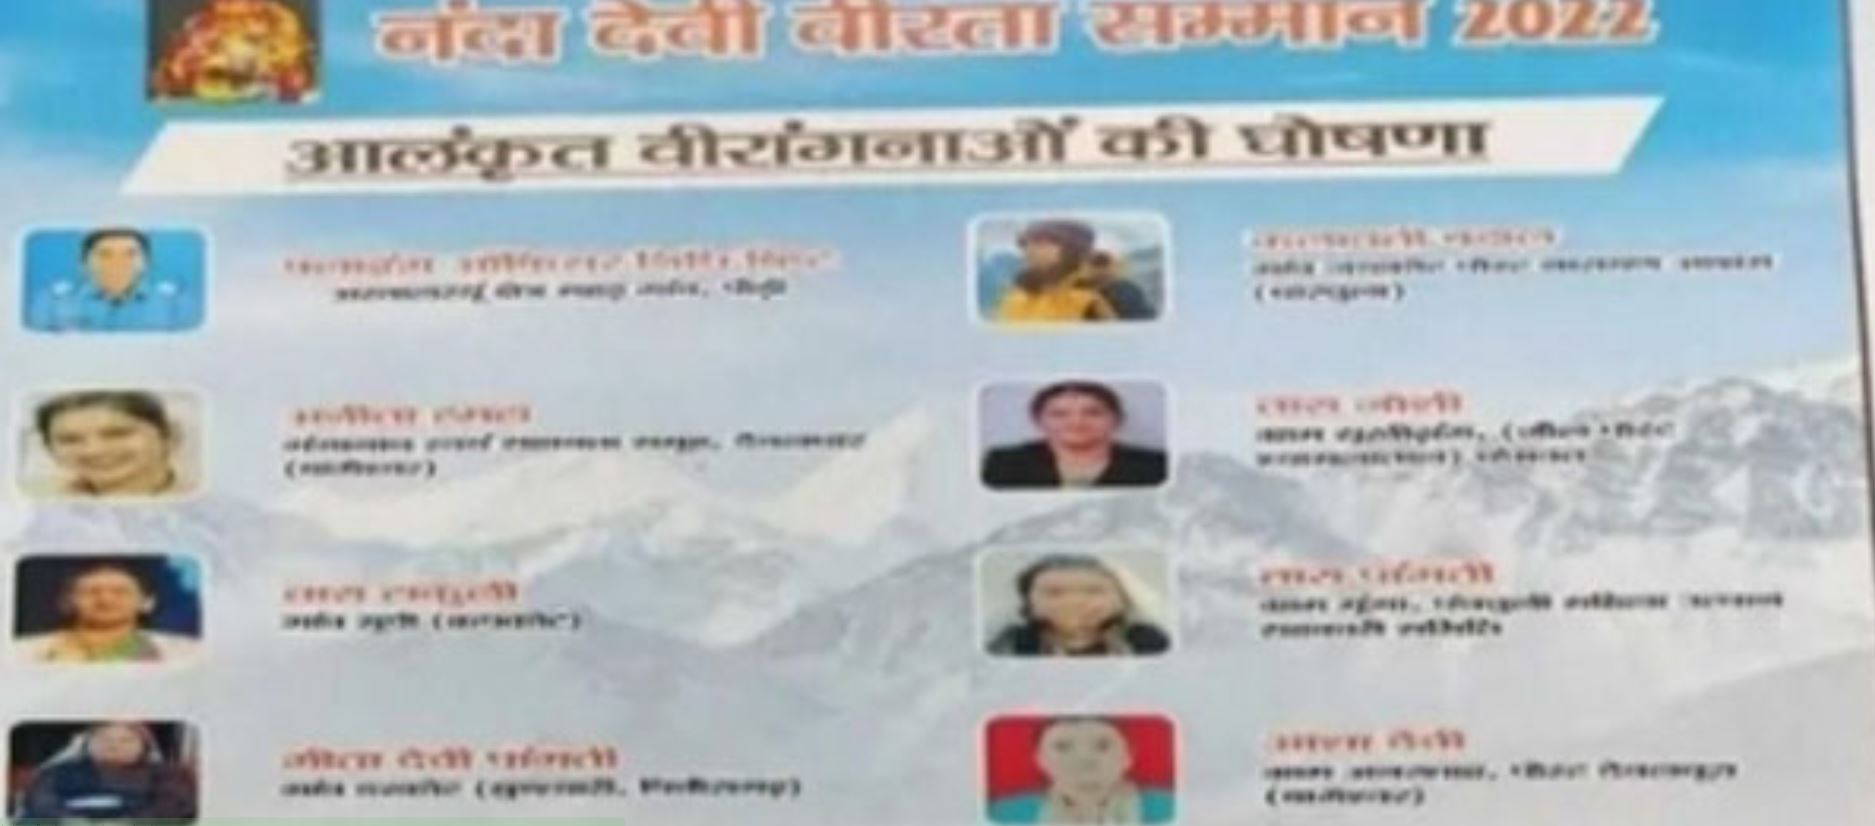 News Today of Uttarakhand